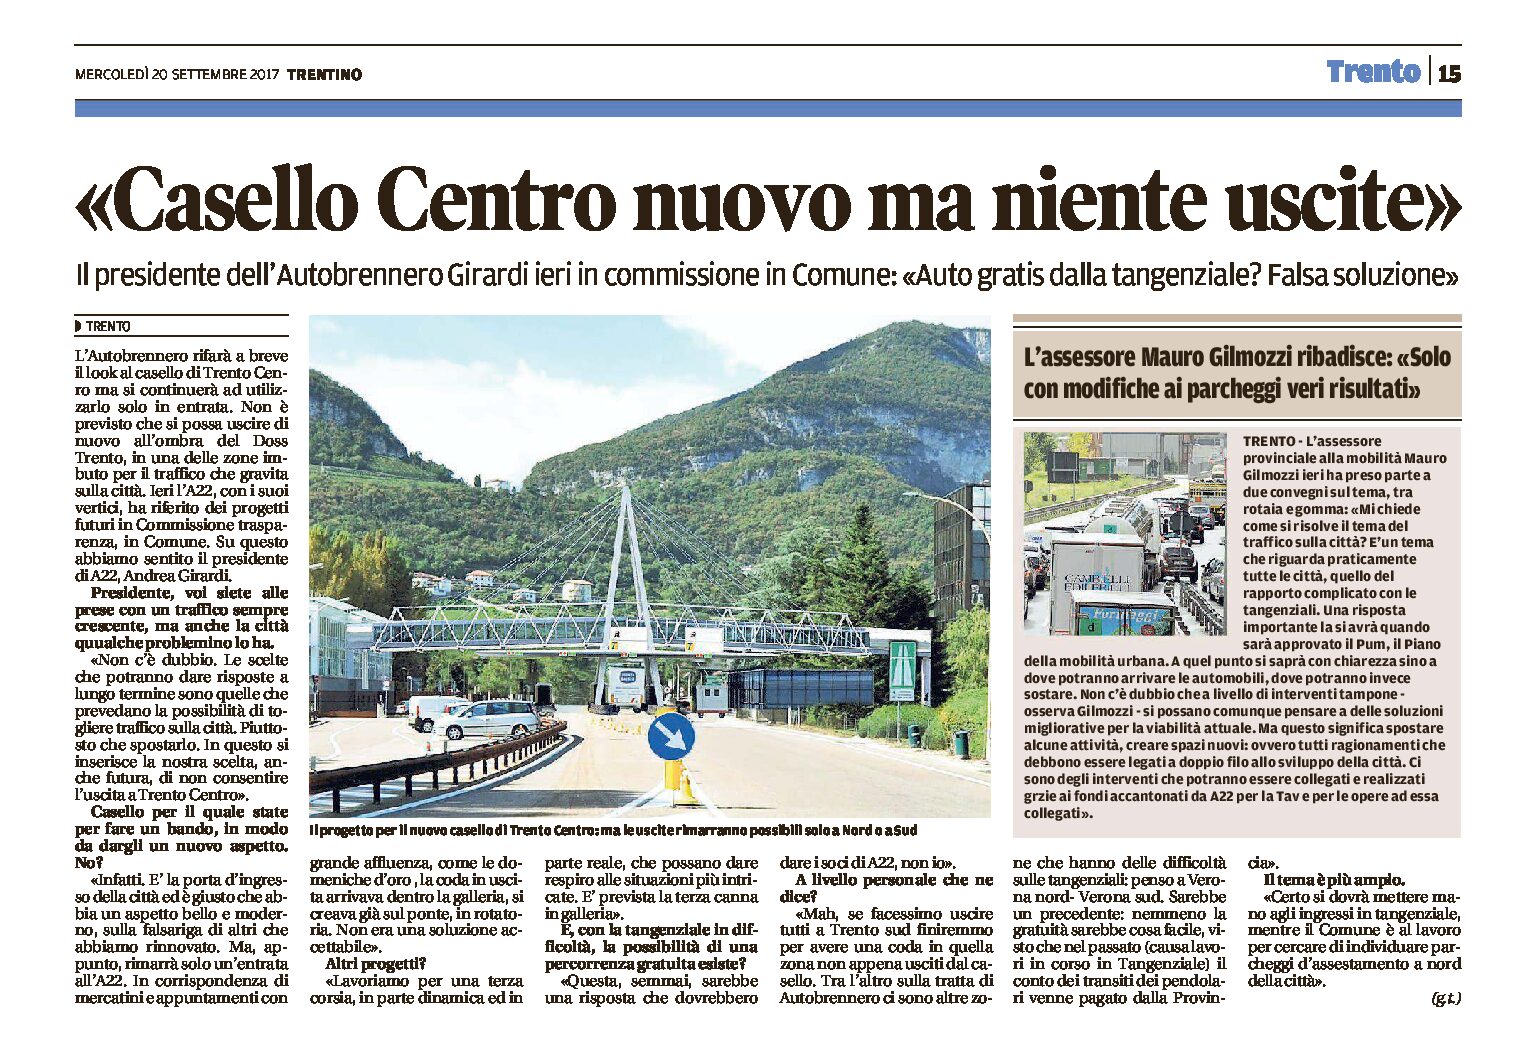 Trento: casello centro nuovo ma niente uscite